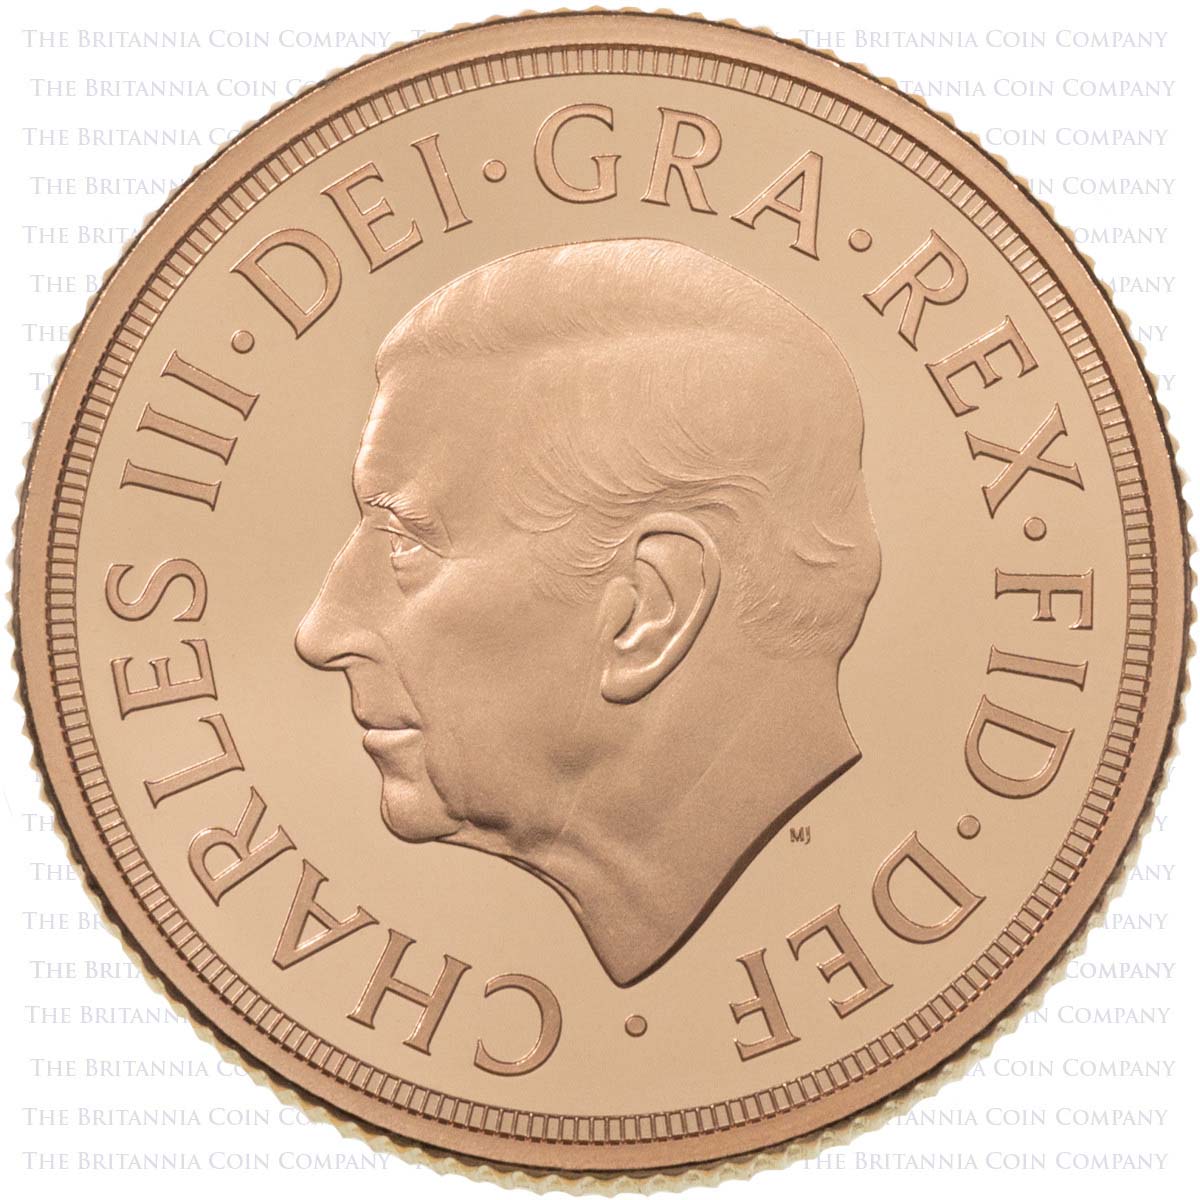 MSV22PF 2022 Charles III Piedfort Gold Proof Sovereign Queen Elizabeth II Memorial Coin Obverse